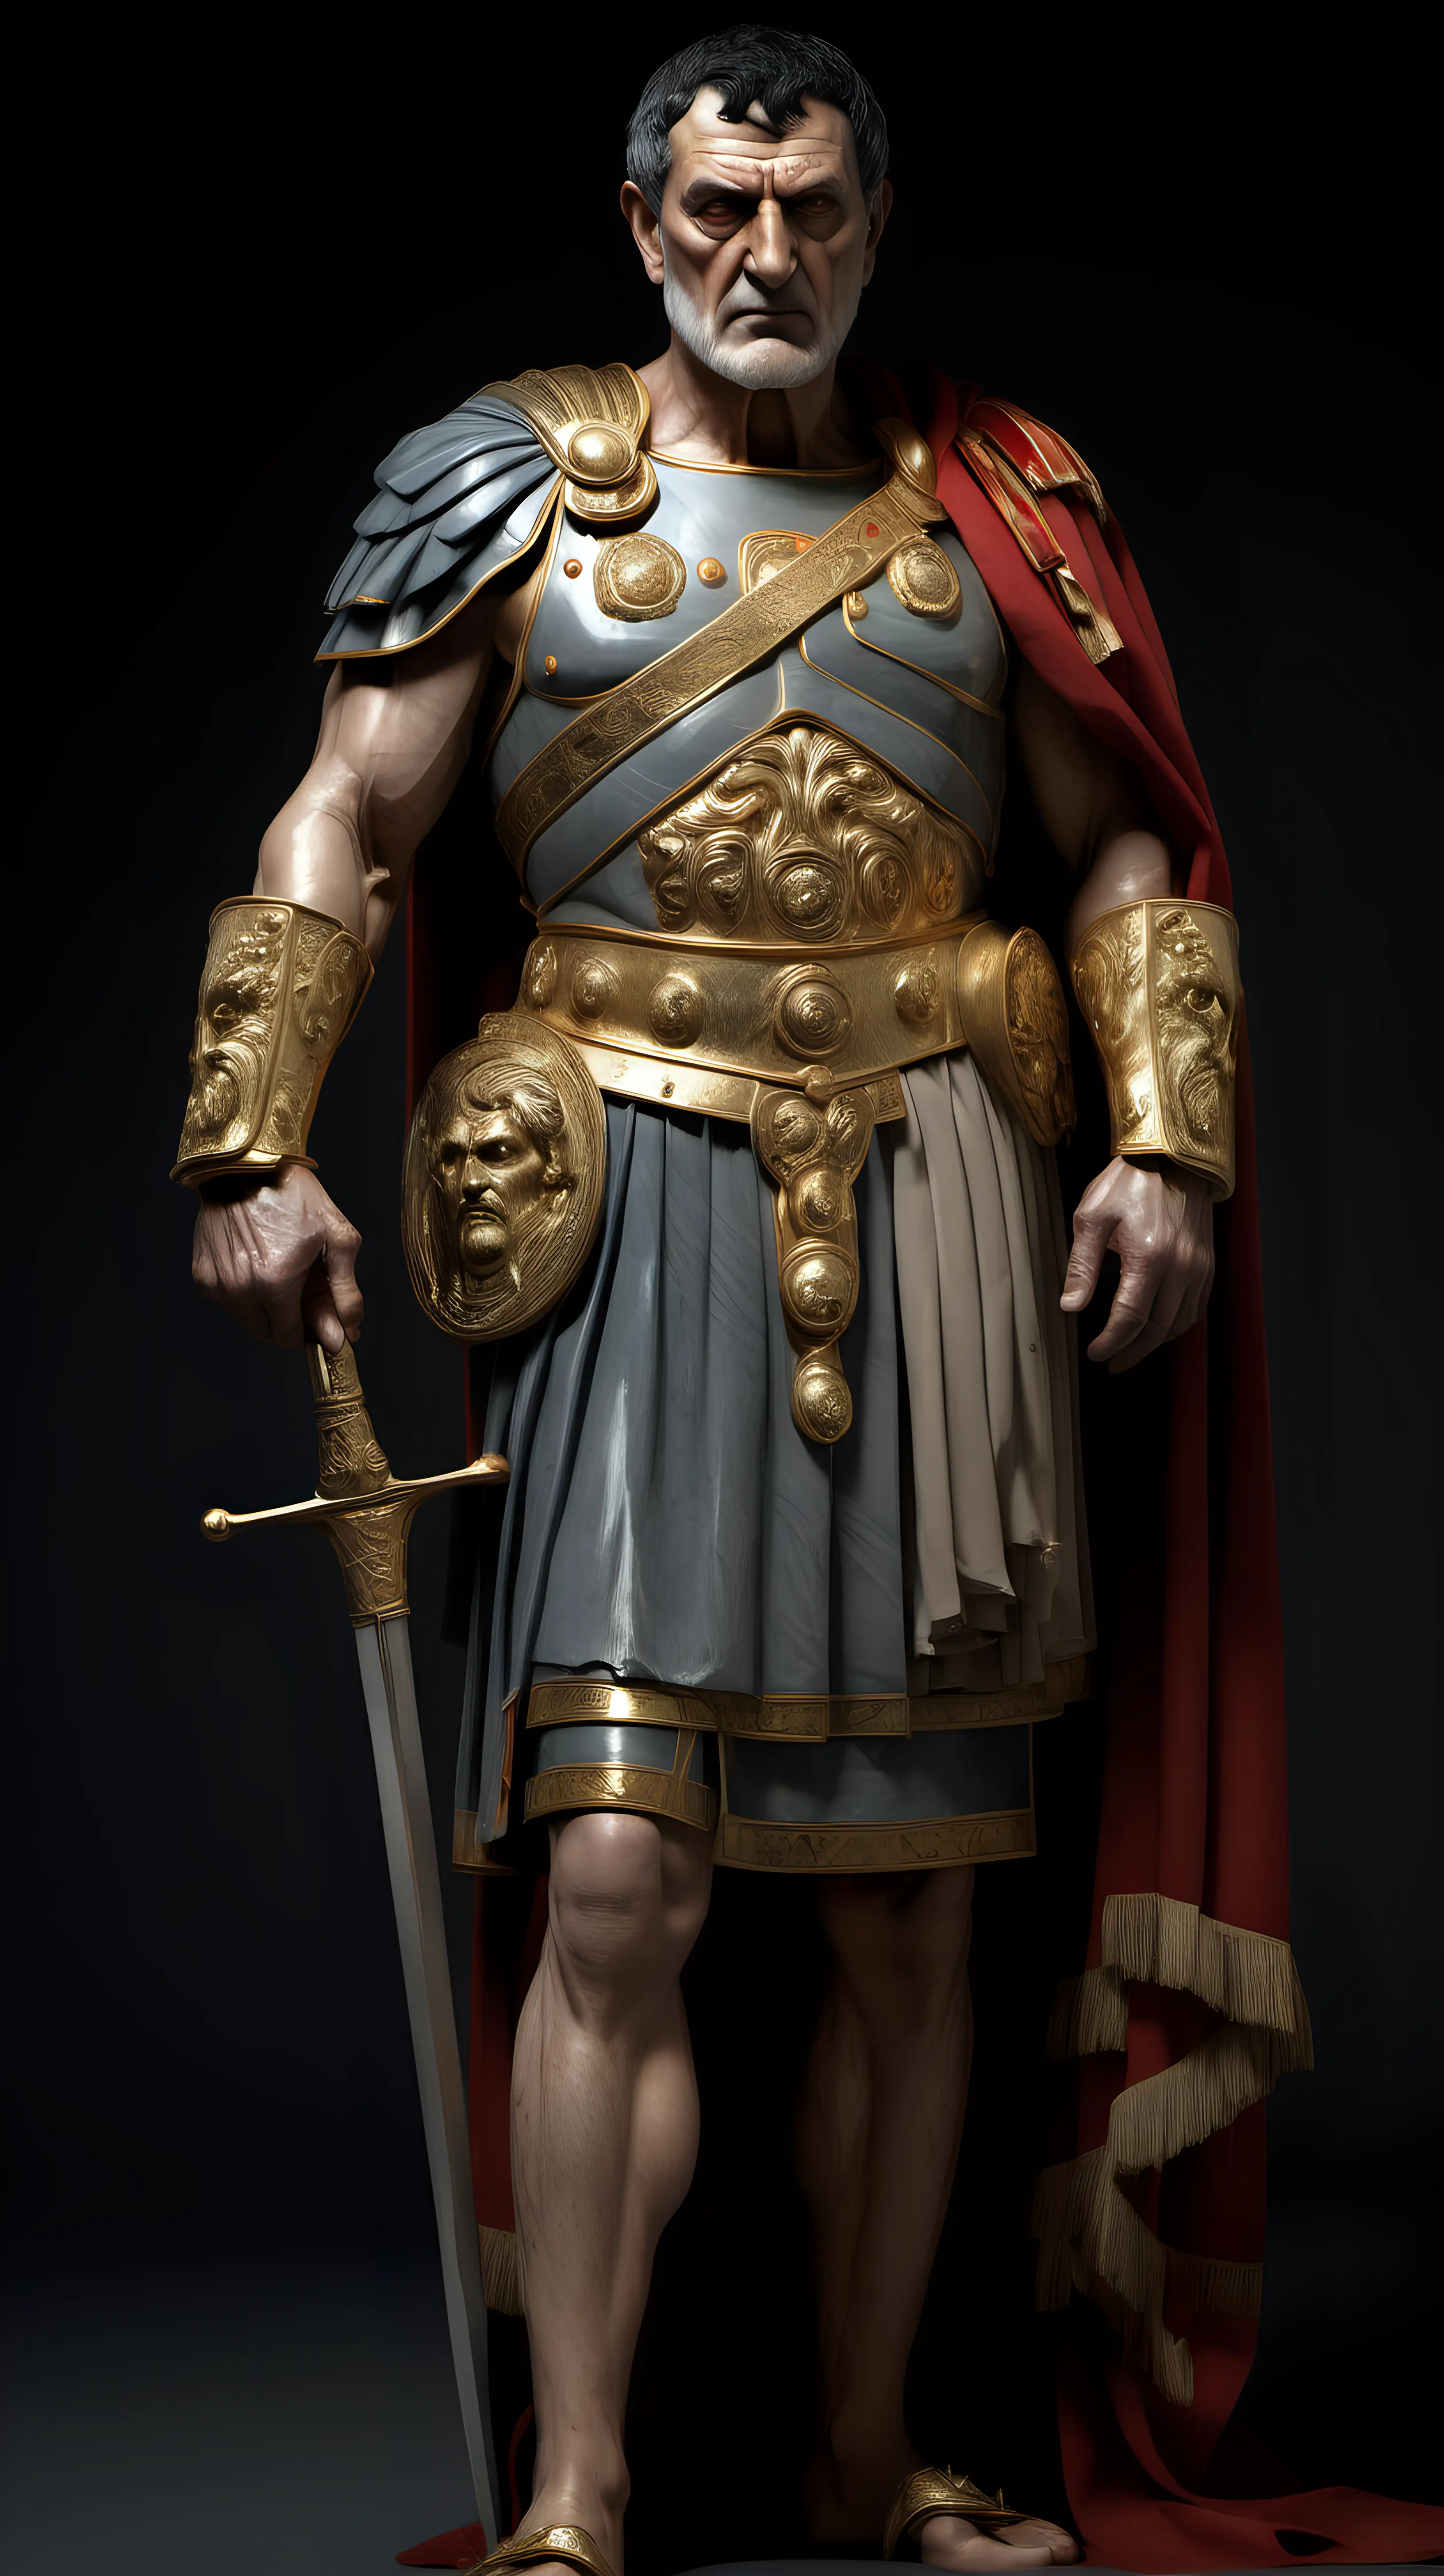 Distinguished Roman Emperor Portrait with Battle Decorations